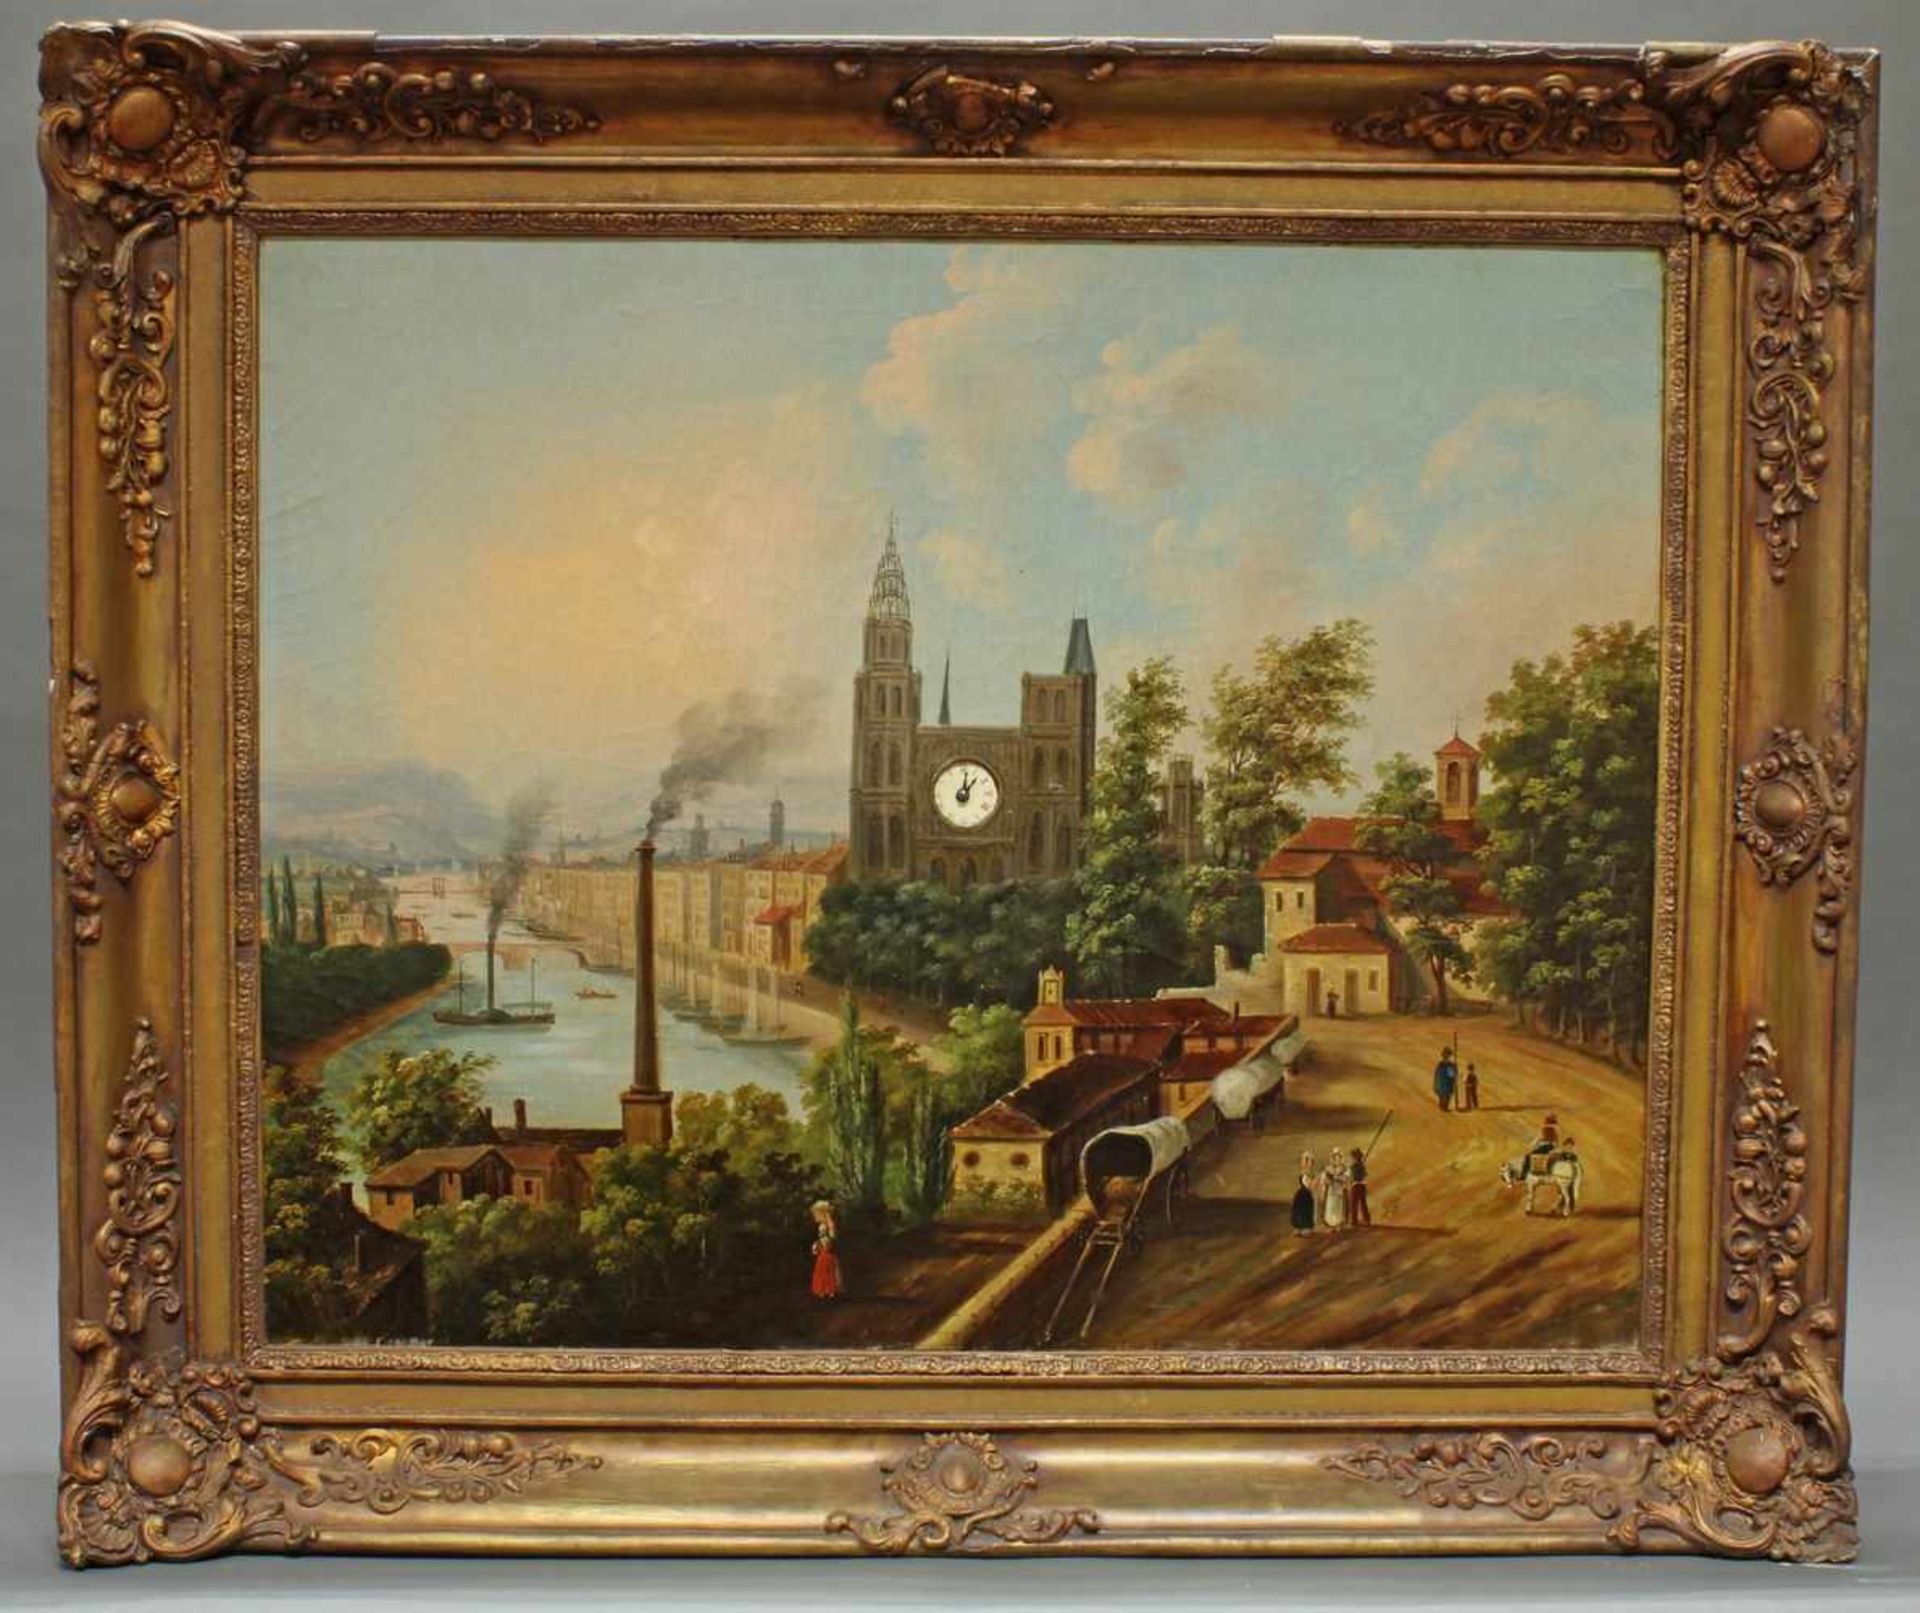 Bilderuhr, "Stadt am Fluß mit Fabrik und Dampfschiff", Frankreich, um 1840/1850, Öl auf Leinwand,